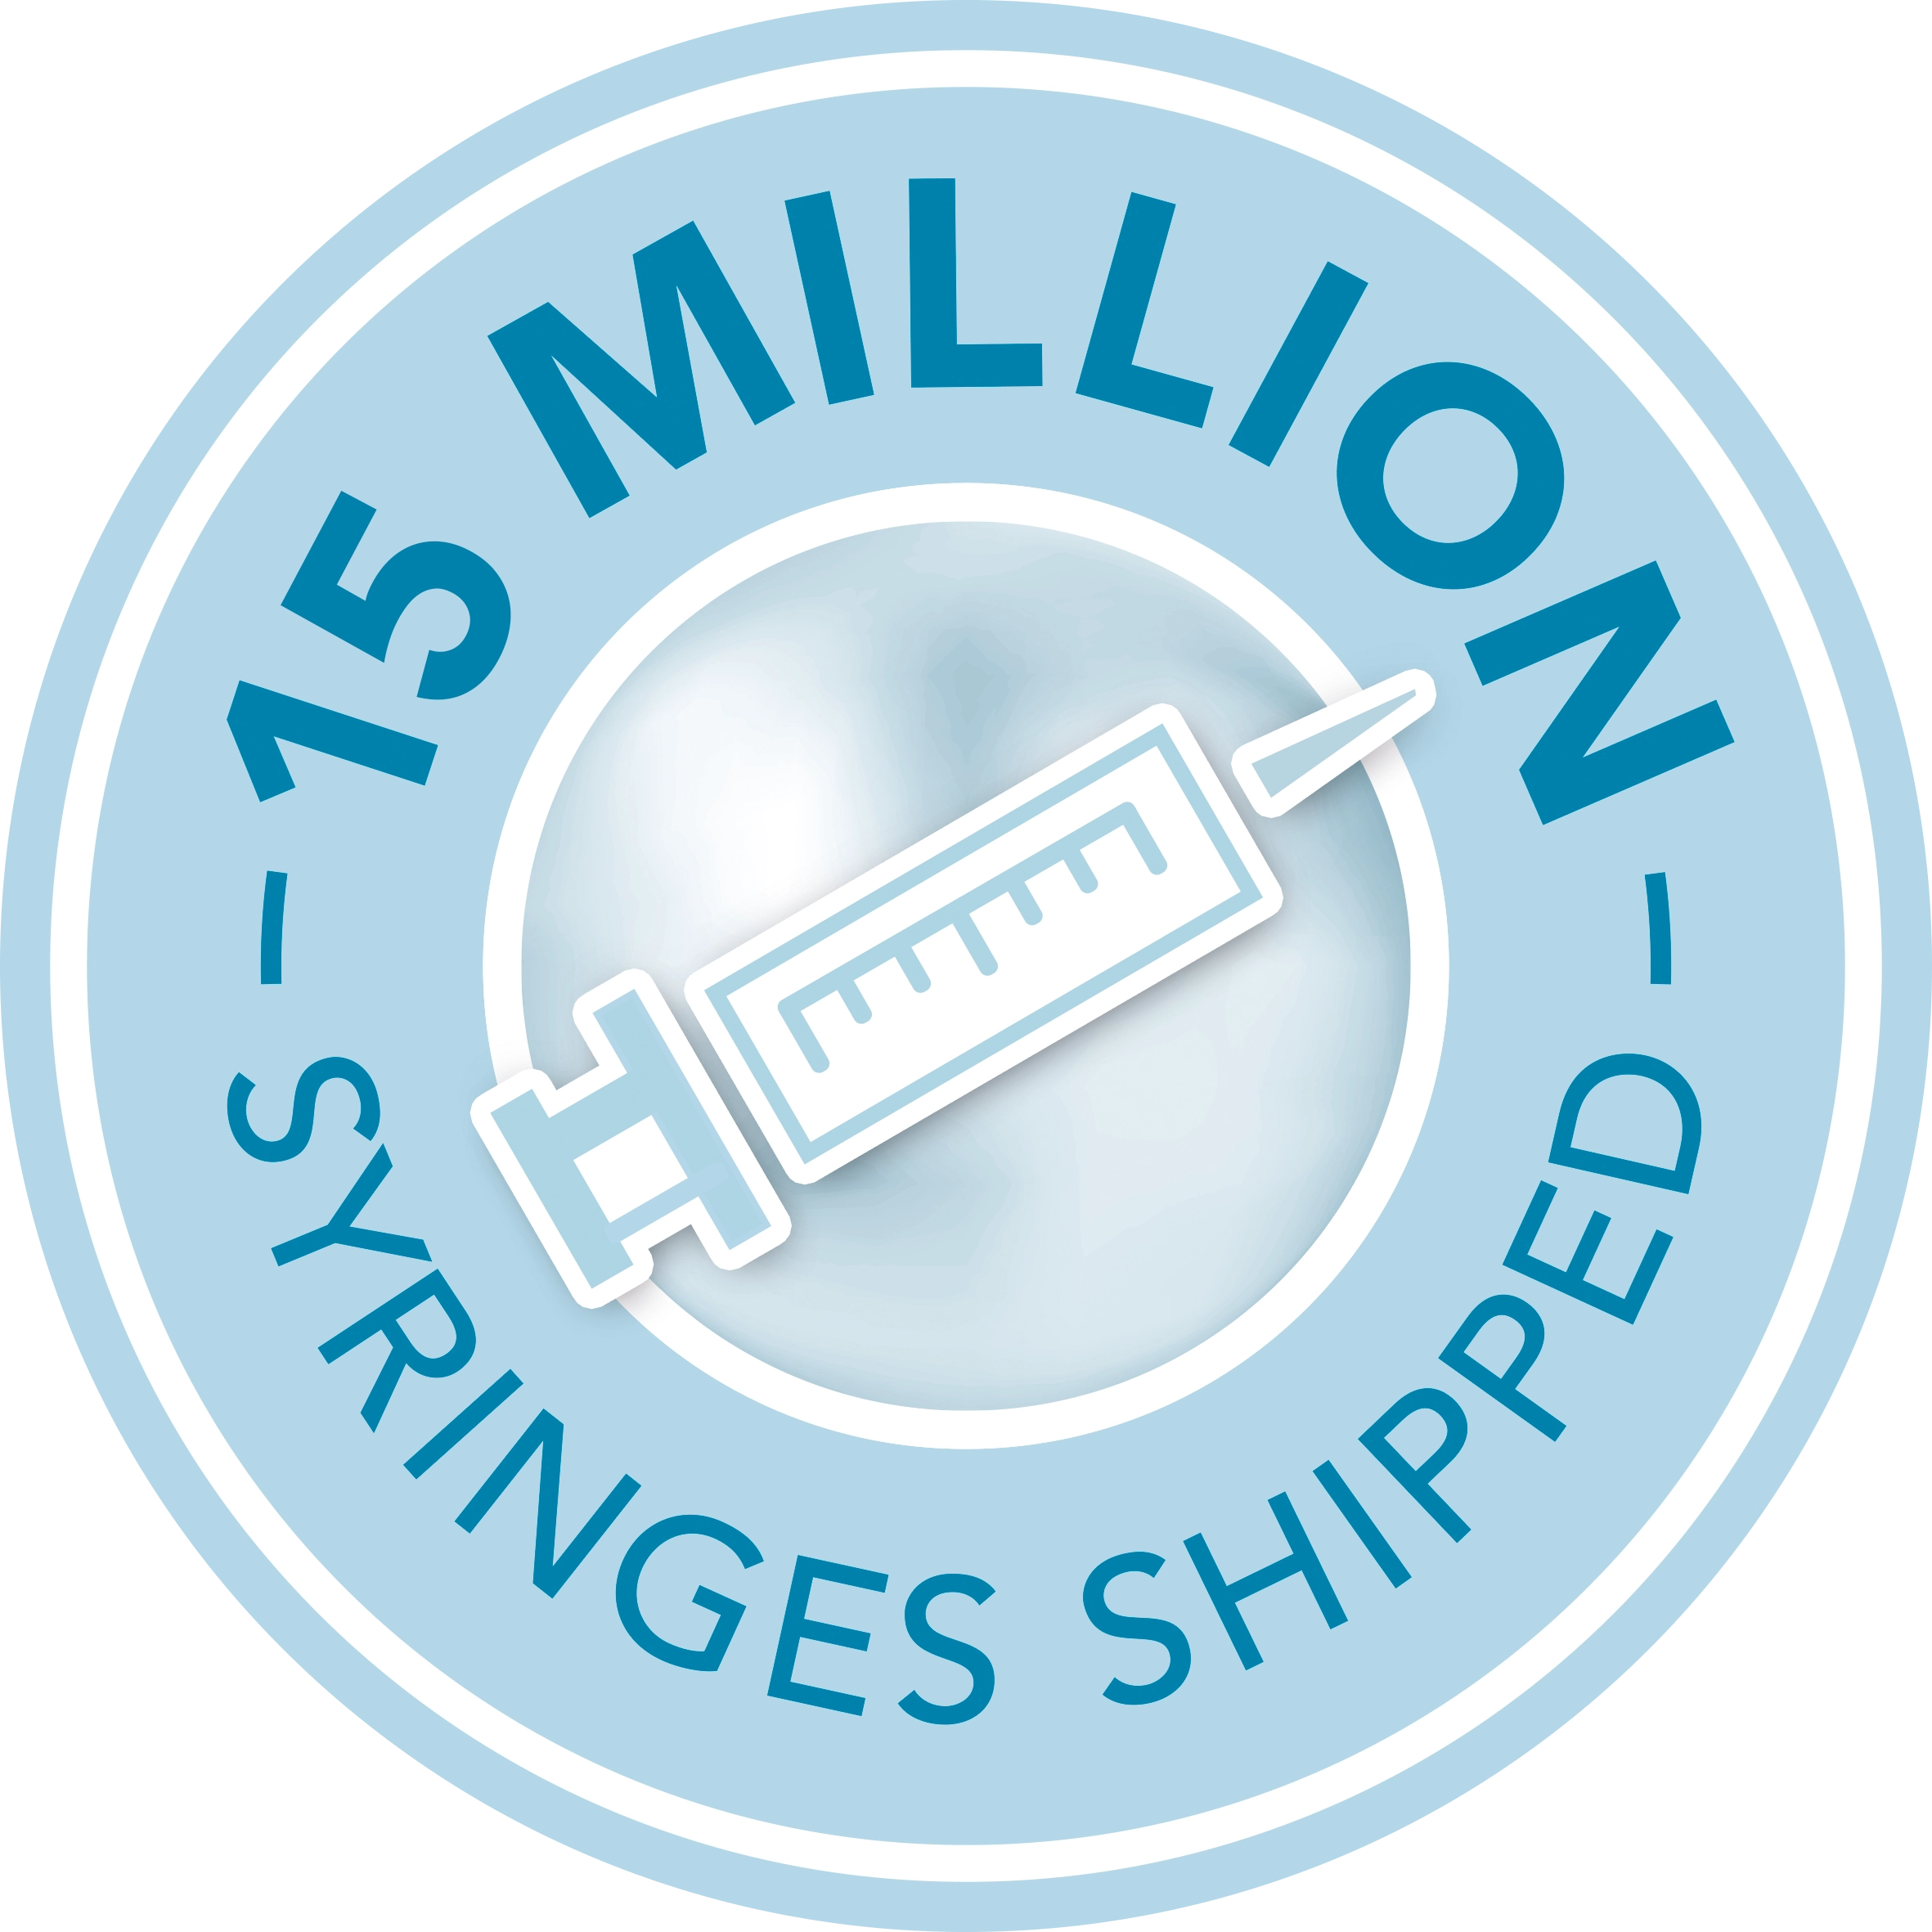 15 million syringes shipped